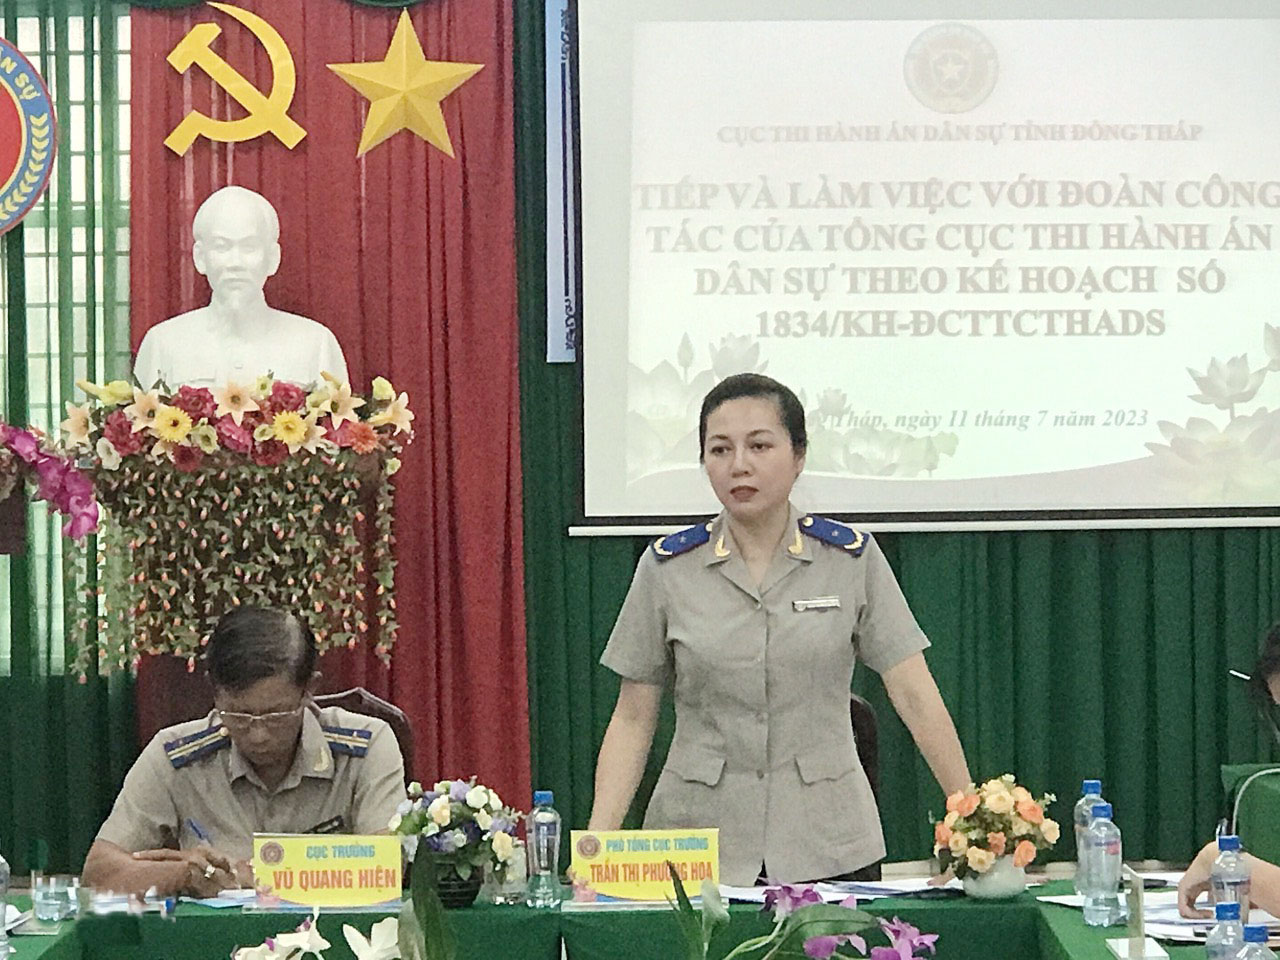 Phó Tổng cục trưởng - Trần Thị Phương Hoa làm việc tại Cục THADS tỉnh Đồng Tháp